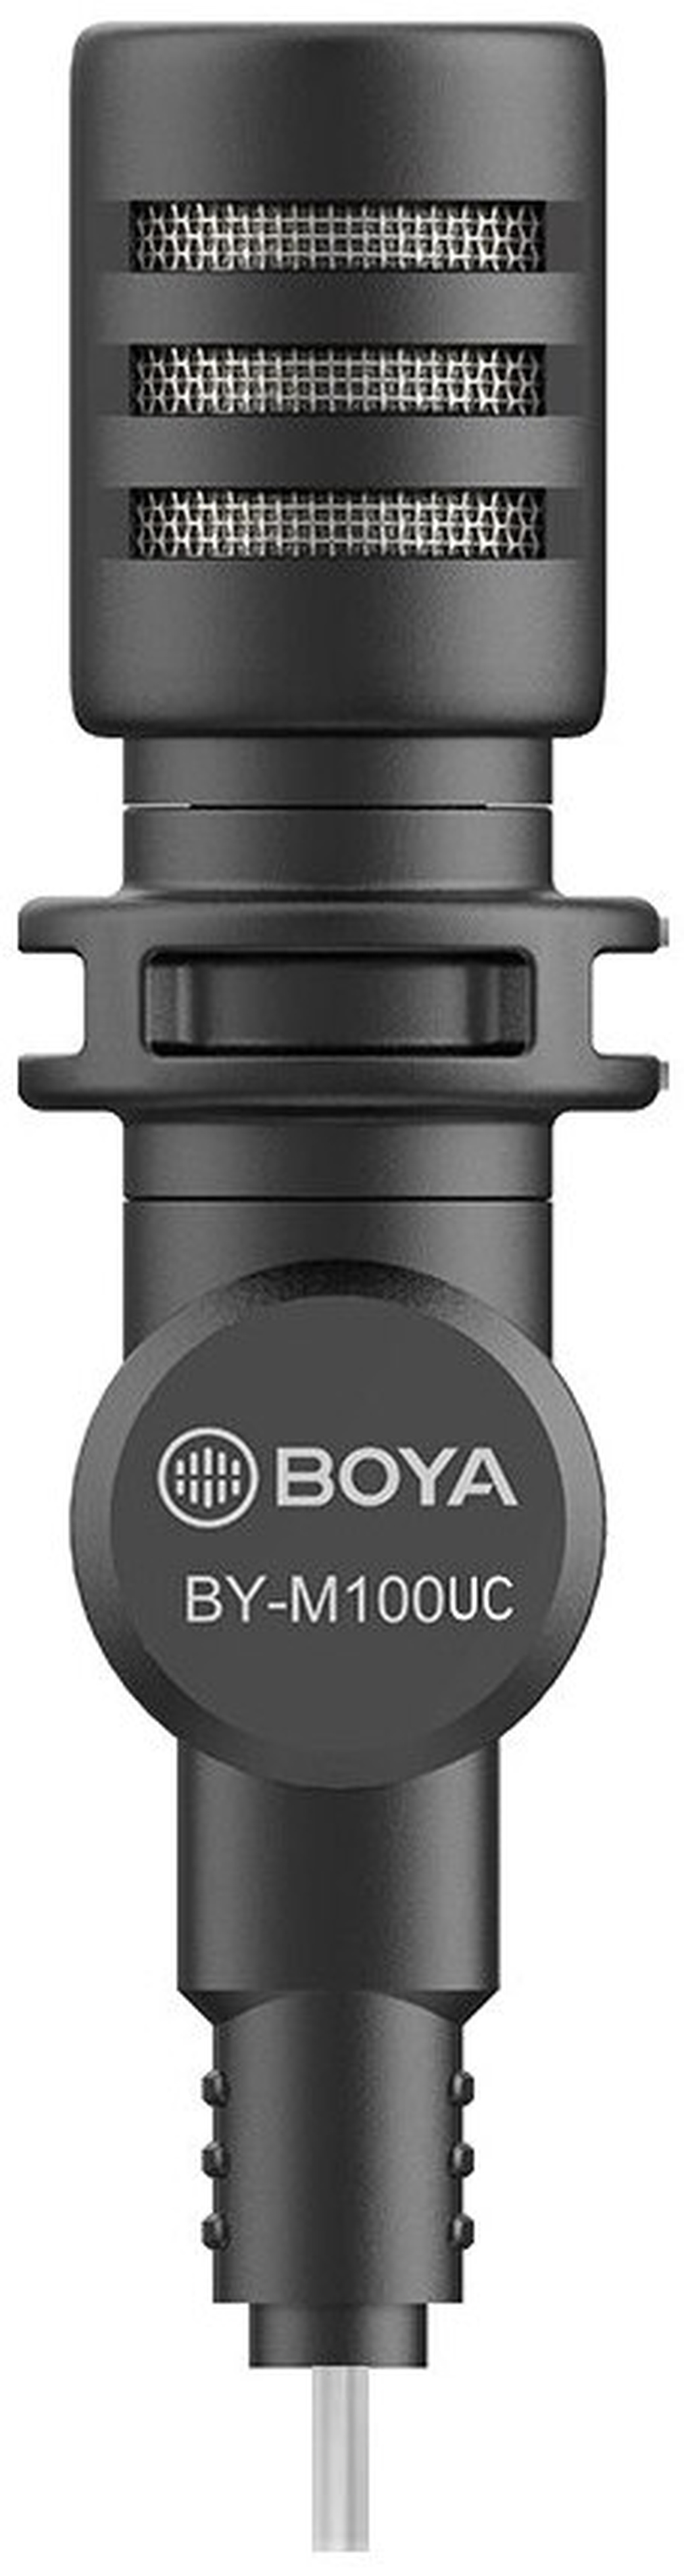 Микрофон Boya BY-M100UC для устройств с USB Type-C разъёмом фото